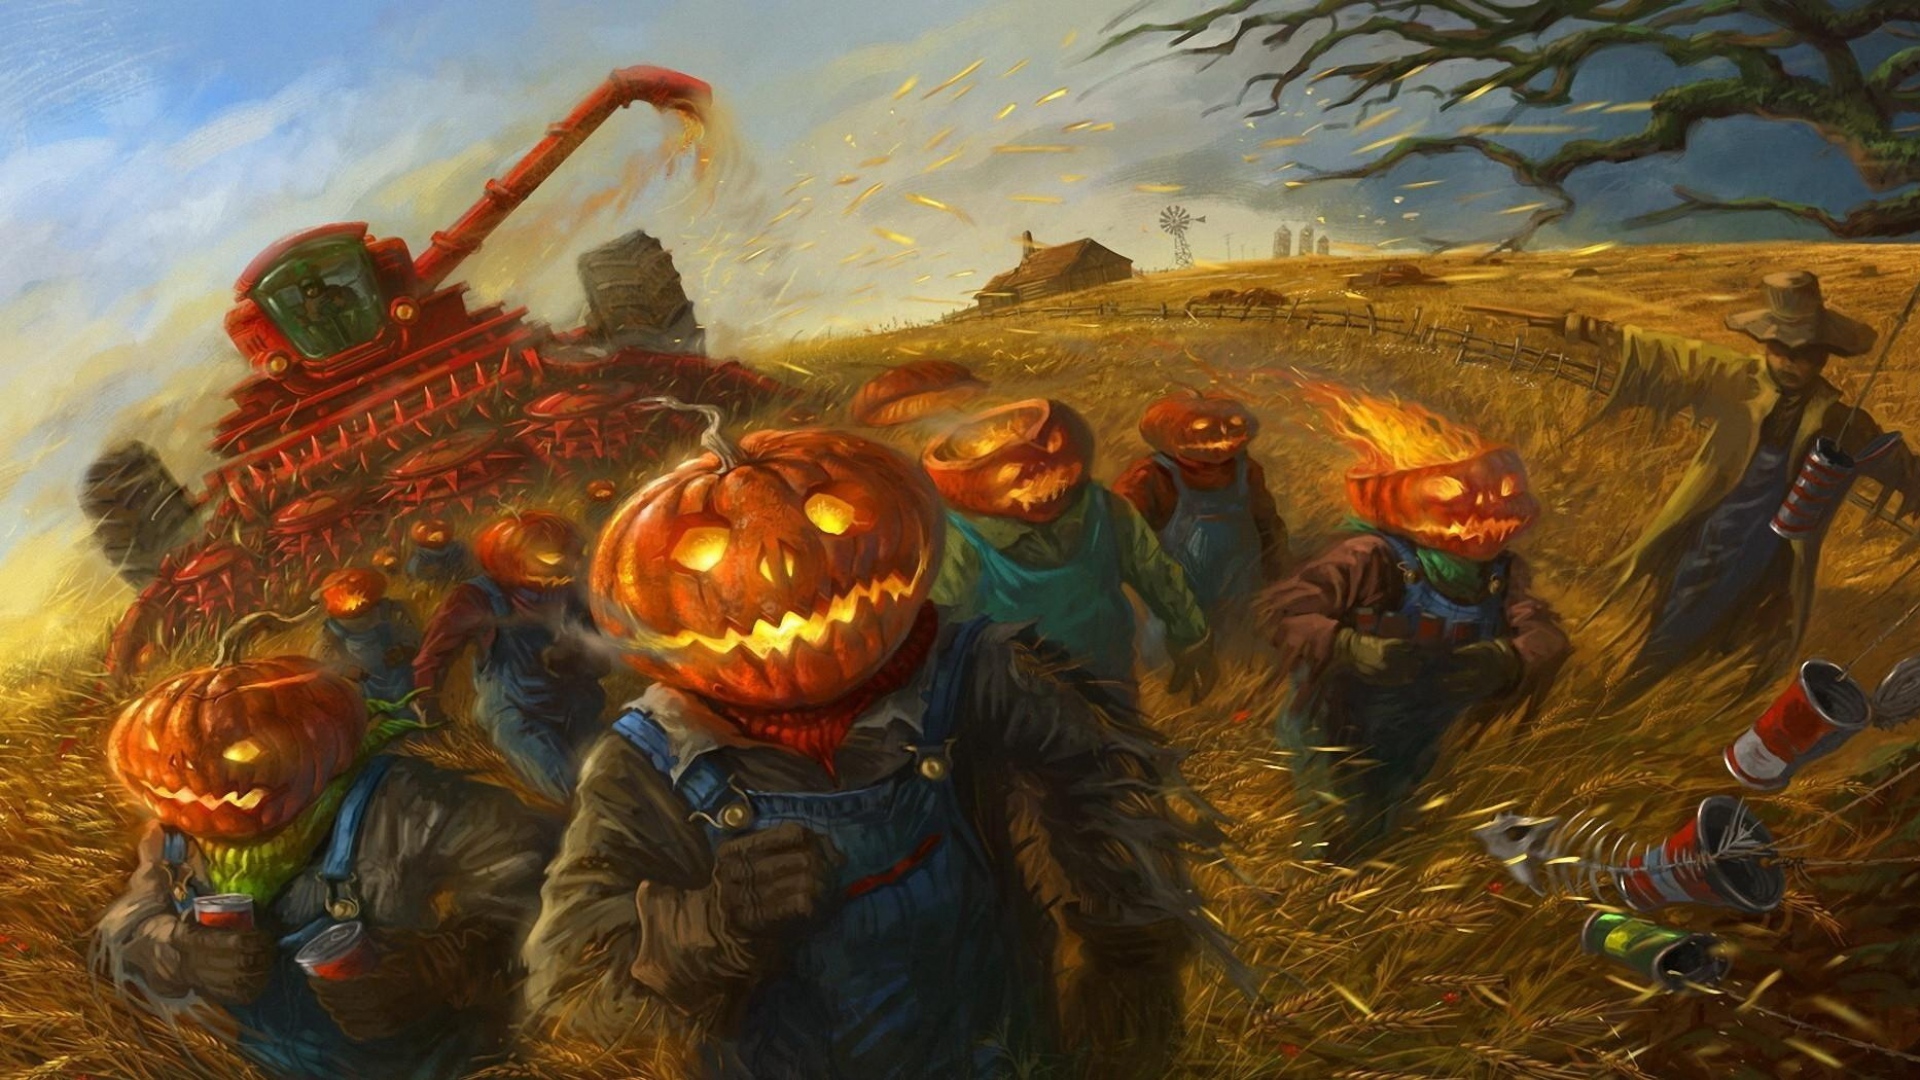 Wallpaper Halloween Field Horror Jack O’ Lantern Art - Halloween Field Jack O Lantern - HD Wallpaper 